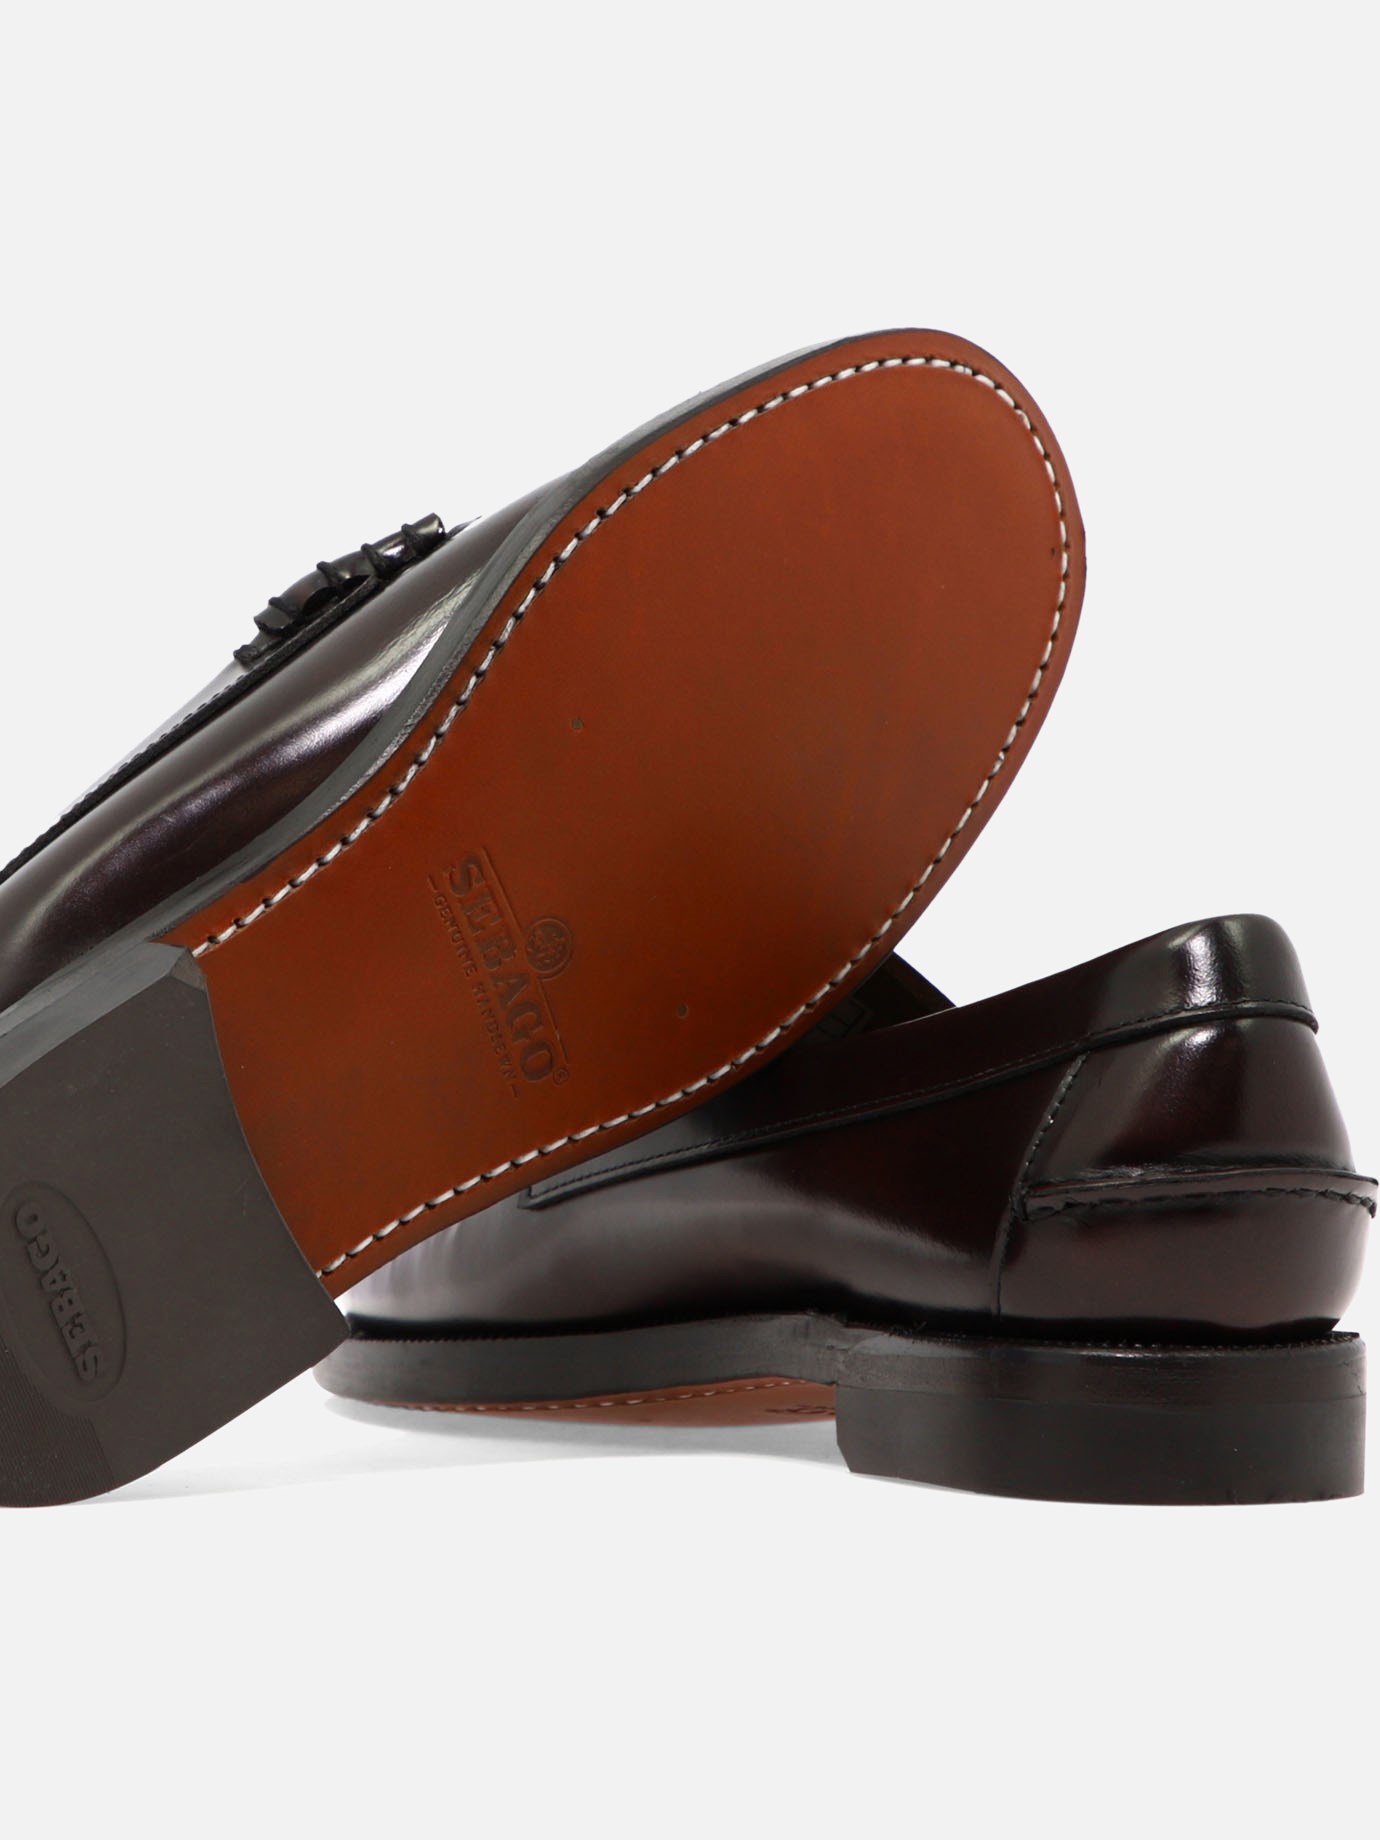  Classic Dan  loafers by Sebago